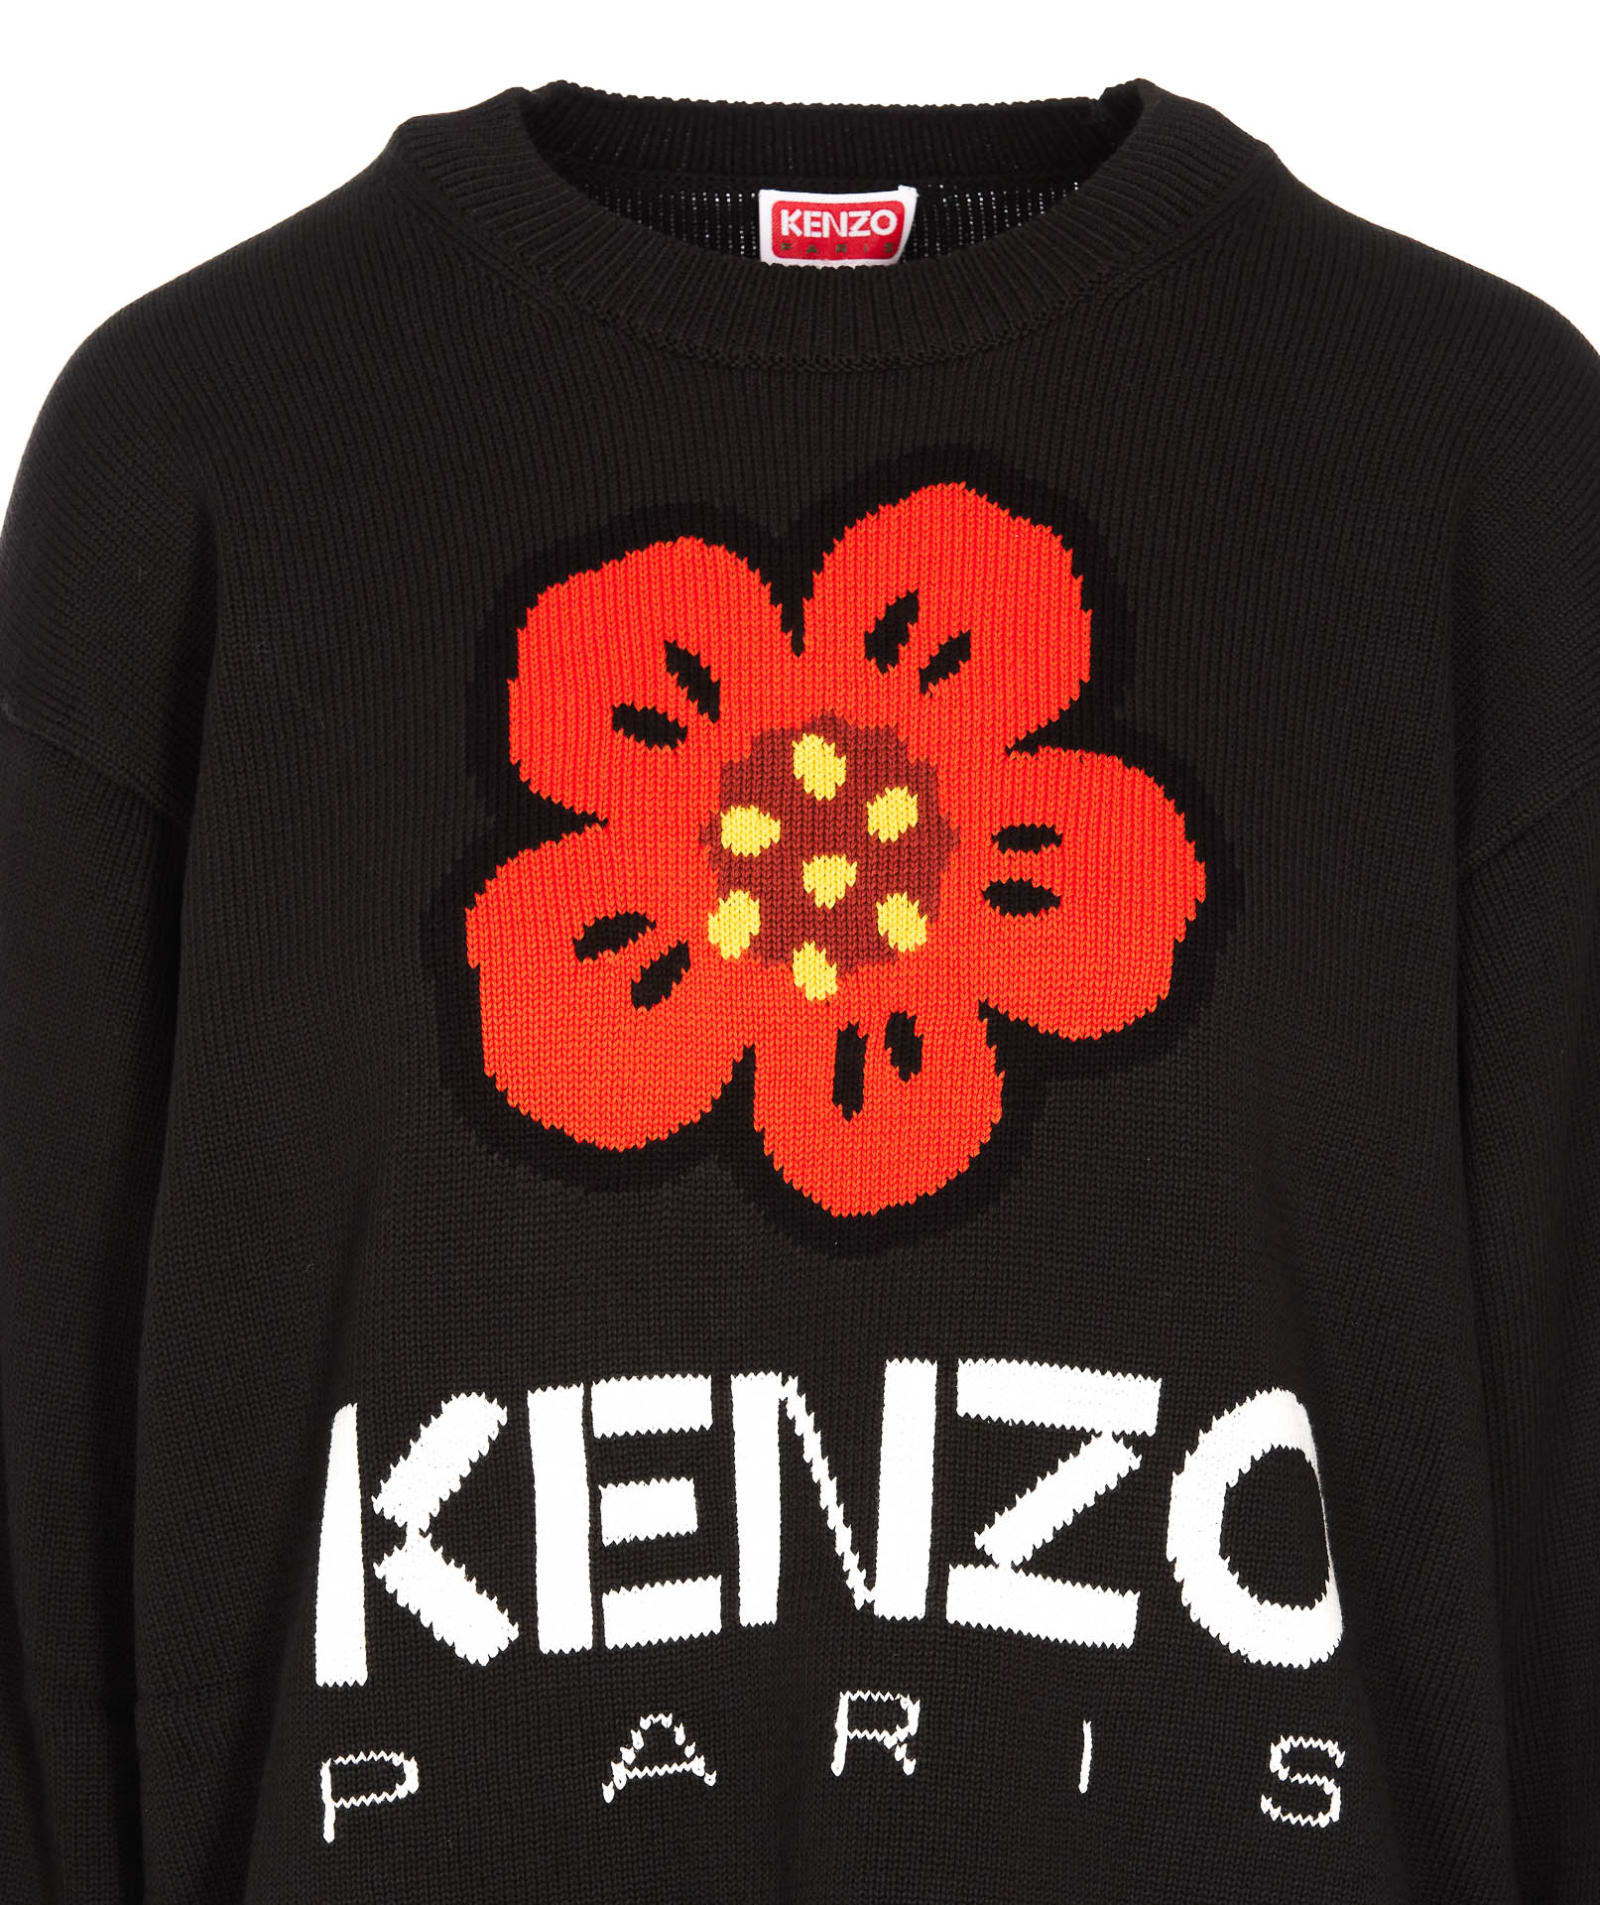 Shop Kenzo Paris Comfort Sweatshirt In Black